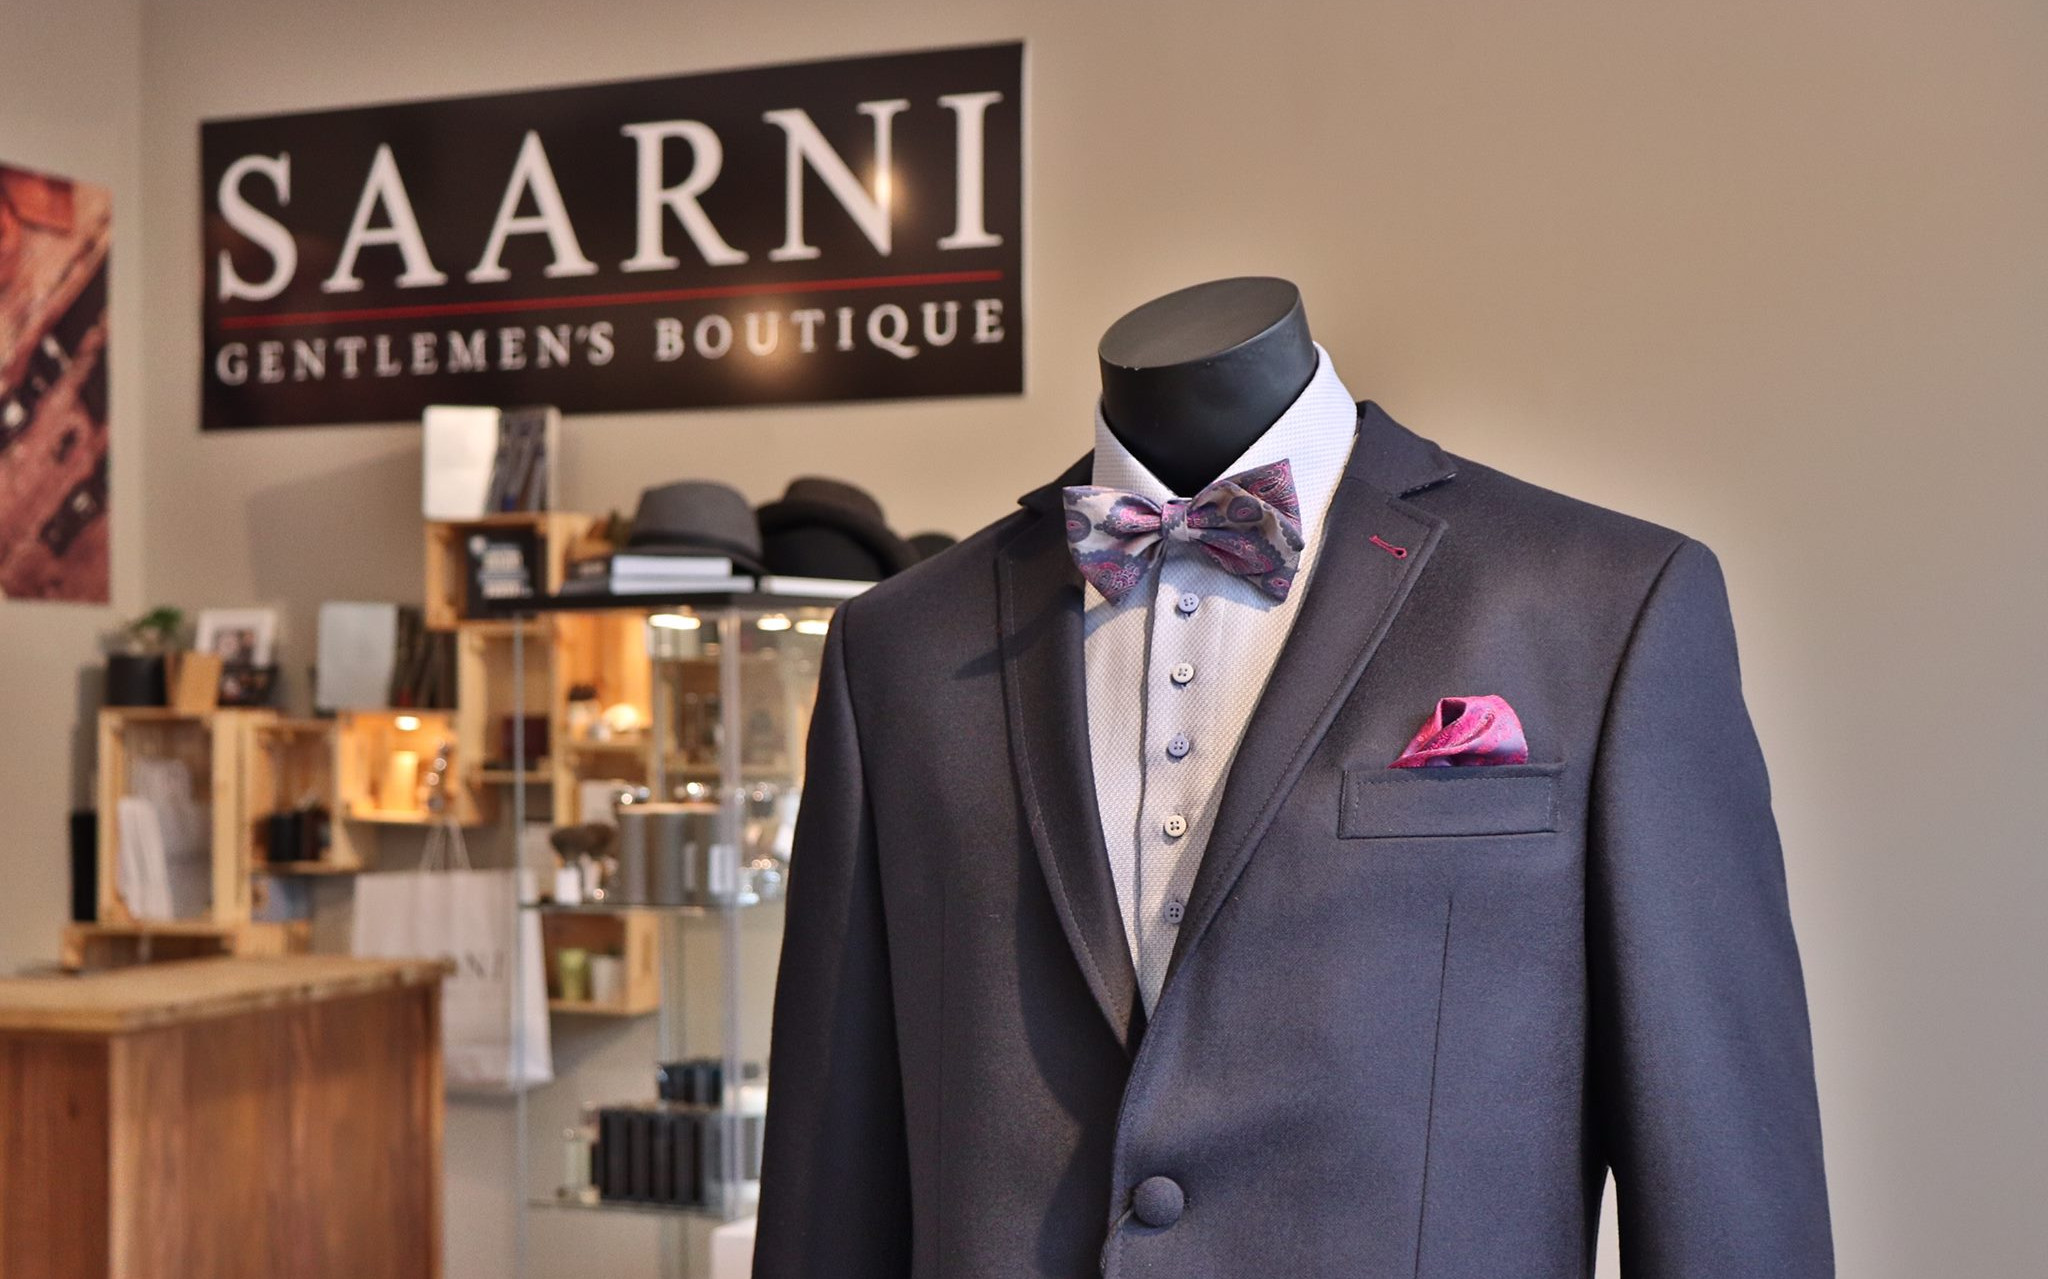 Saarni Gentlemen's Boutique